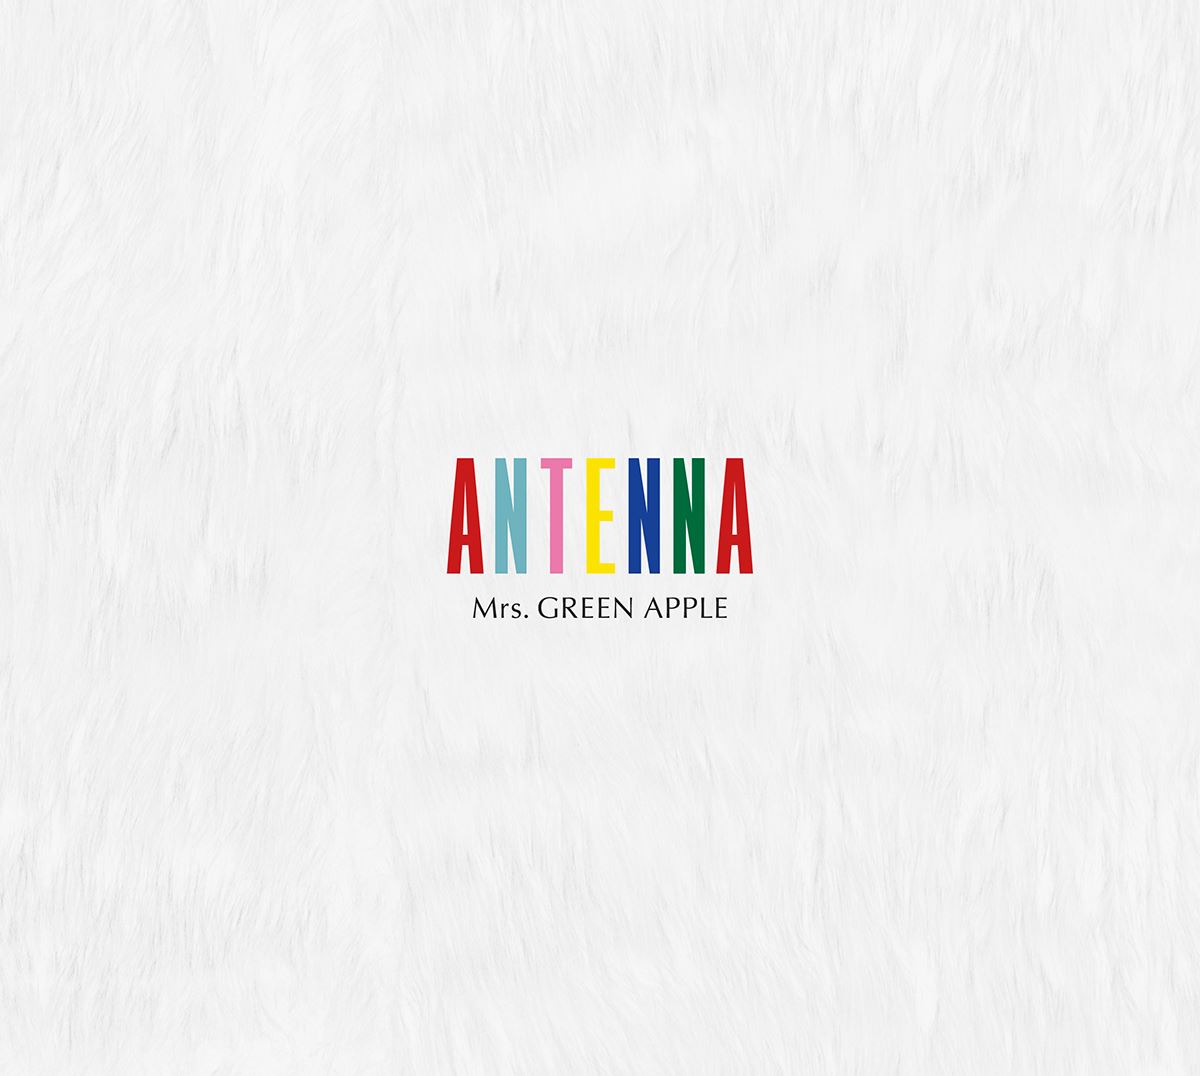 Mrs. GREEN APPLE、ニューアルバム『ANTENNA』発売記念YouTubeライブを今夜実施 ぴあ音楽